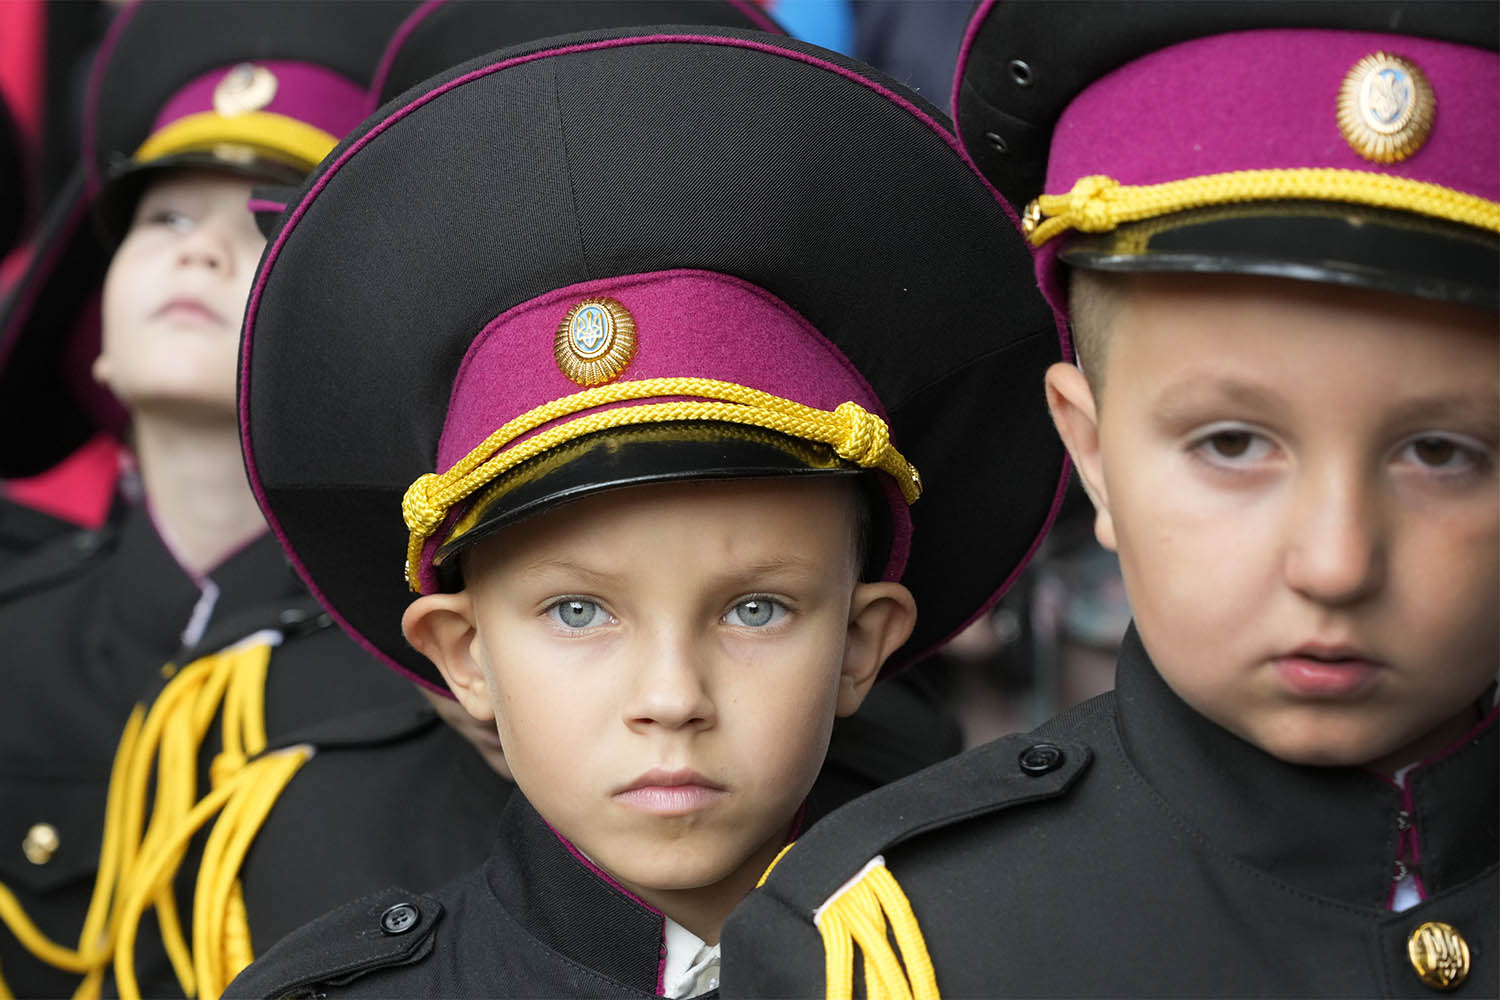 צוערים צעירים משתתפים בטקס היום הראשון ללימודים בקייב, אוקראינה. המתיחות בין רוסיה לאוקראינה גוברת, וארה״ב ואירופה מנסות למנוע פלישה רוסית לאוקראינה. 1 בספטמבר 2021 (צילום: AP Photo/Efrem Lukatsky)